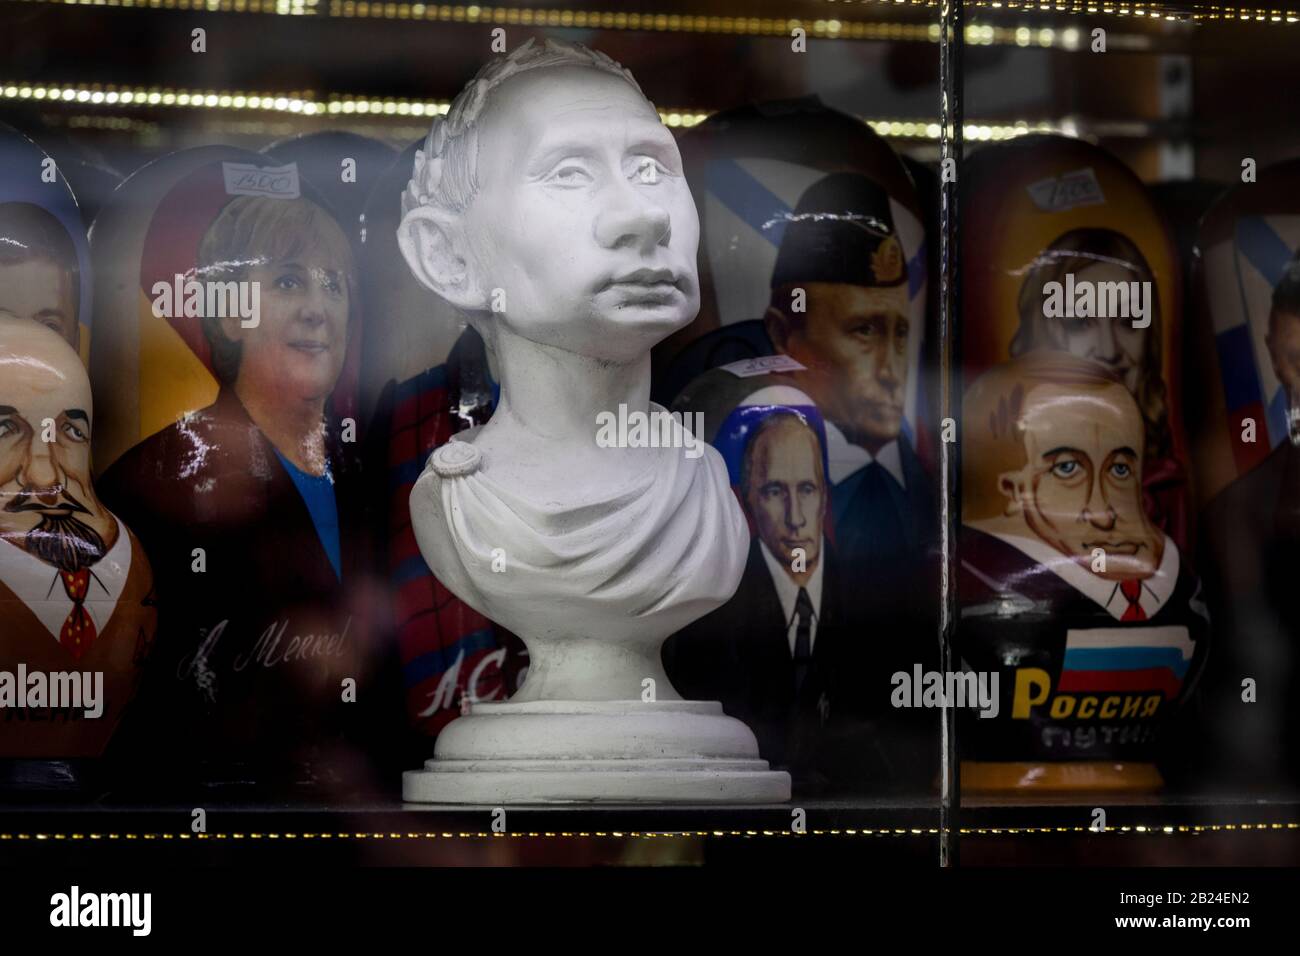 Matrjoschka Puppen mit Bildern von politischen Führern und der Büste des russischen Präsidenten Wladimir Putin in einem Souvenirladen in der Tverskaya Straße in Moskau, Russland Stockfoto